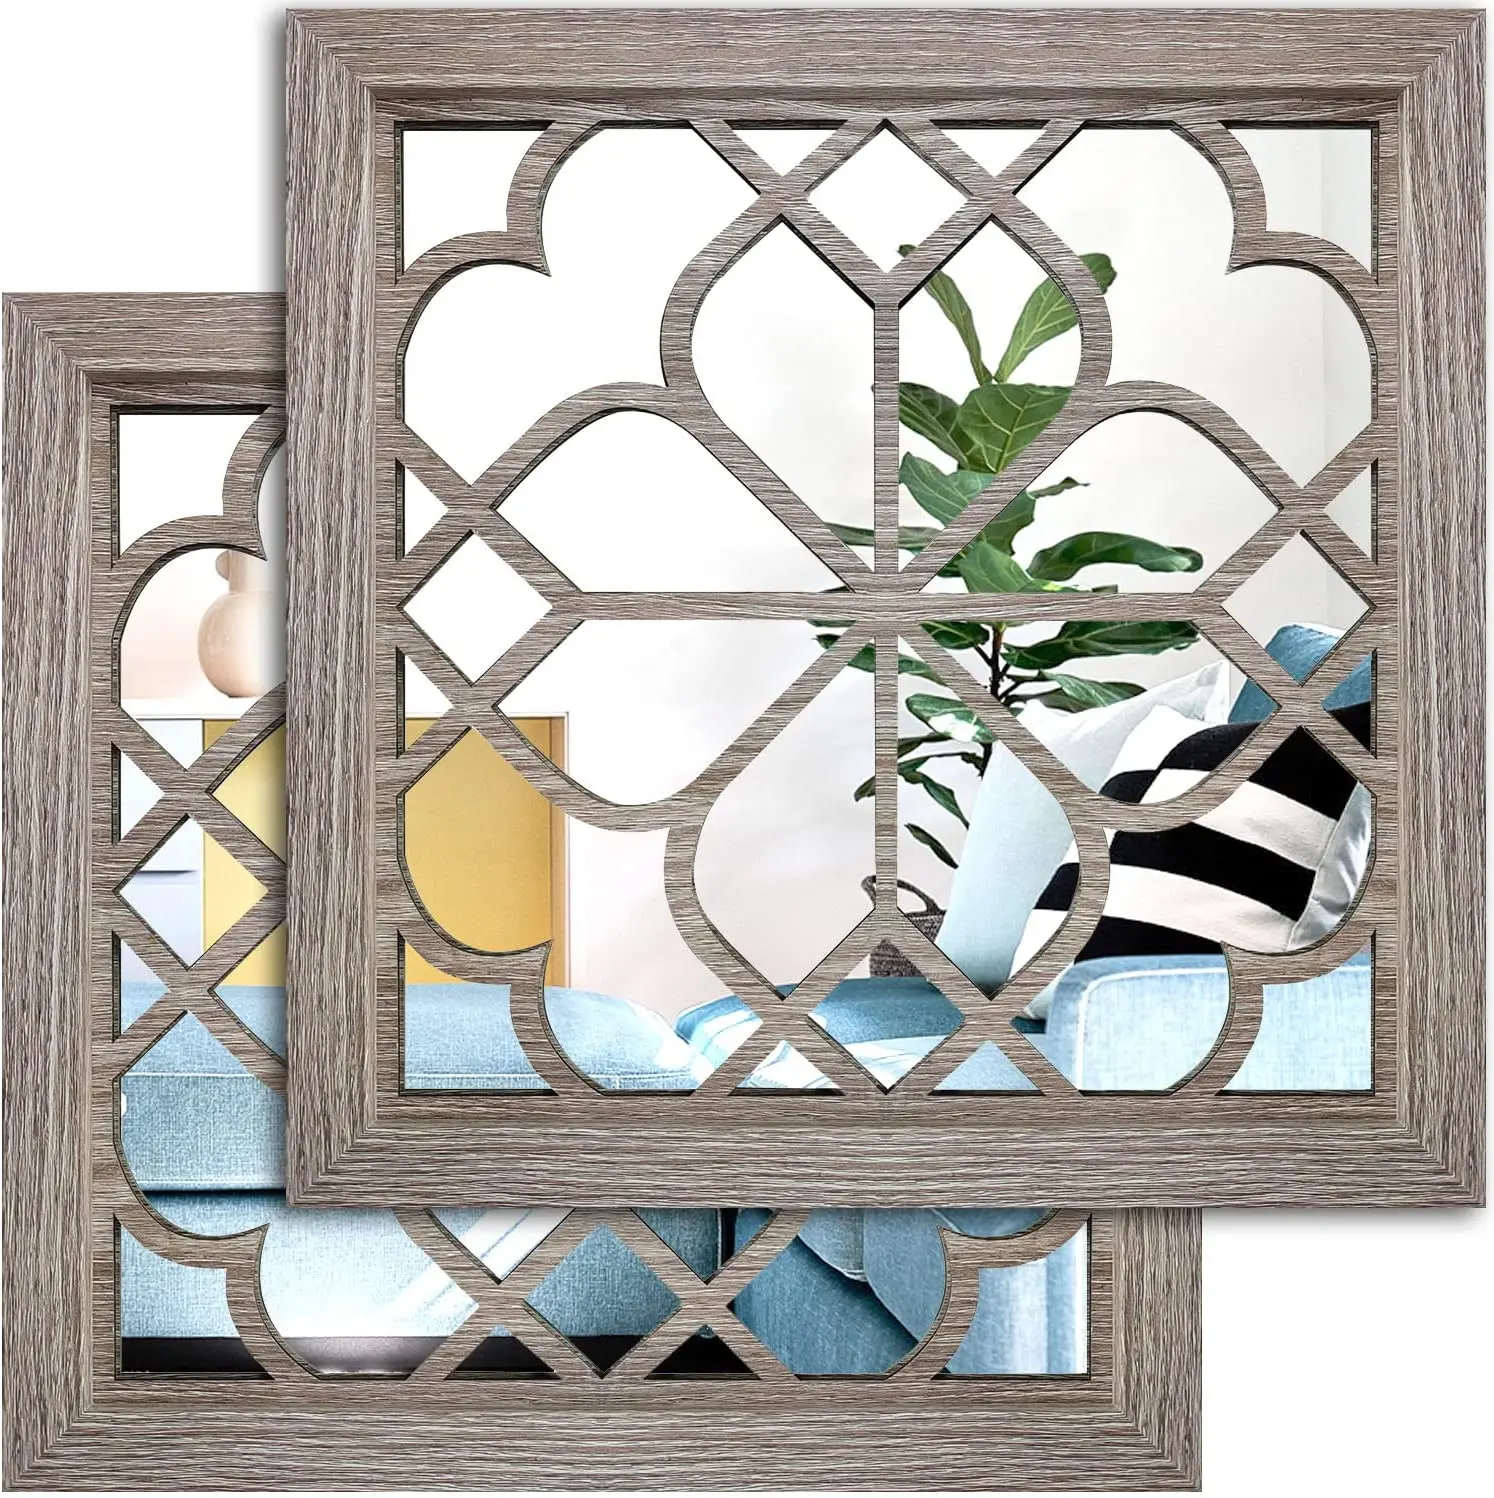 

Квадратное настенное зеркало 2 шт., роскошное декоративное зеркало в деревенском стиле для дома, деревянное цветное барное зеркало для ремо...